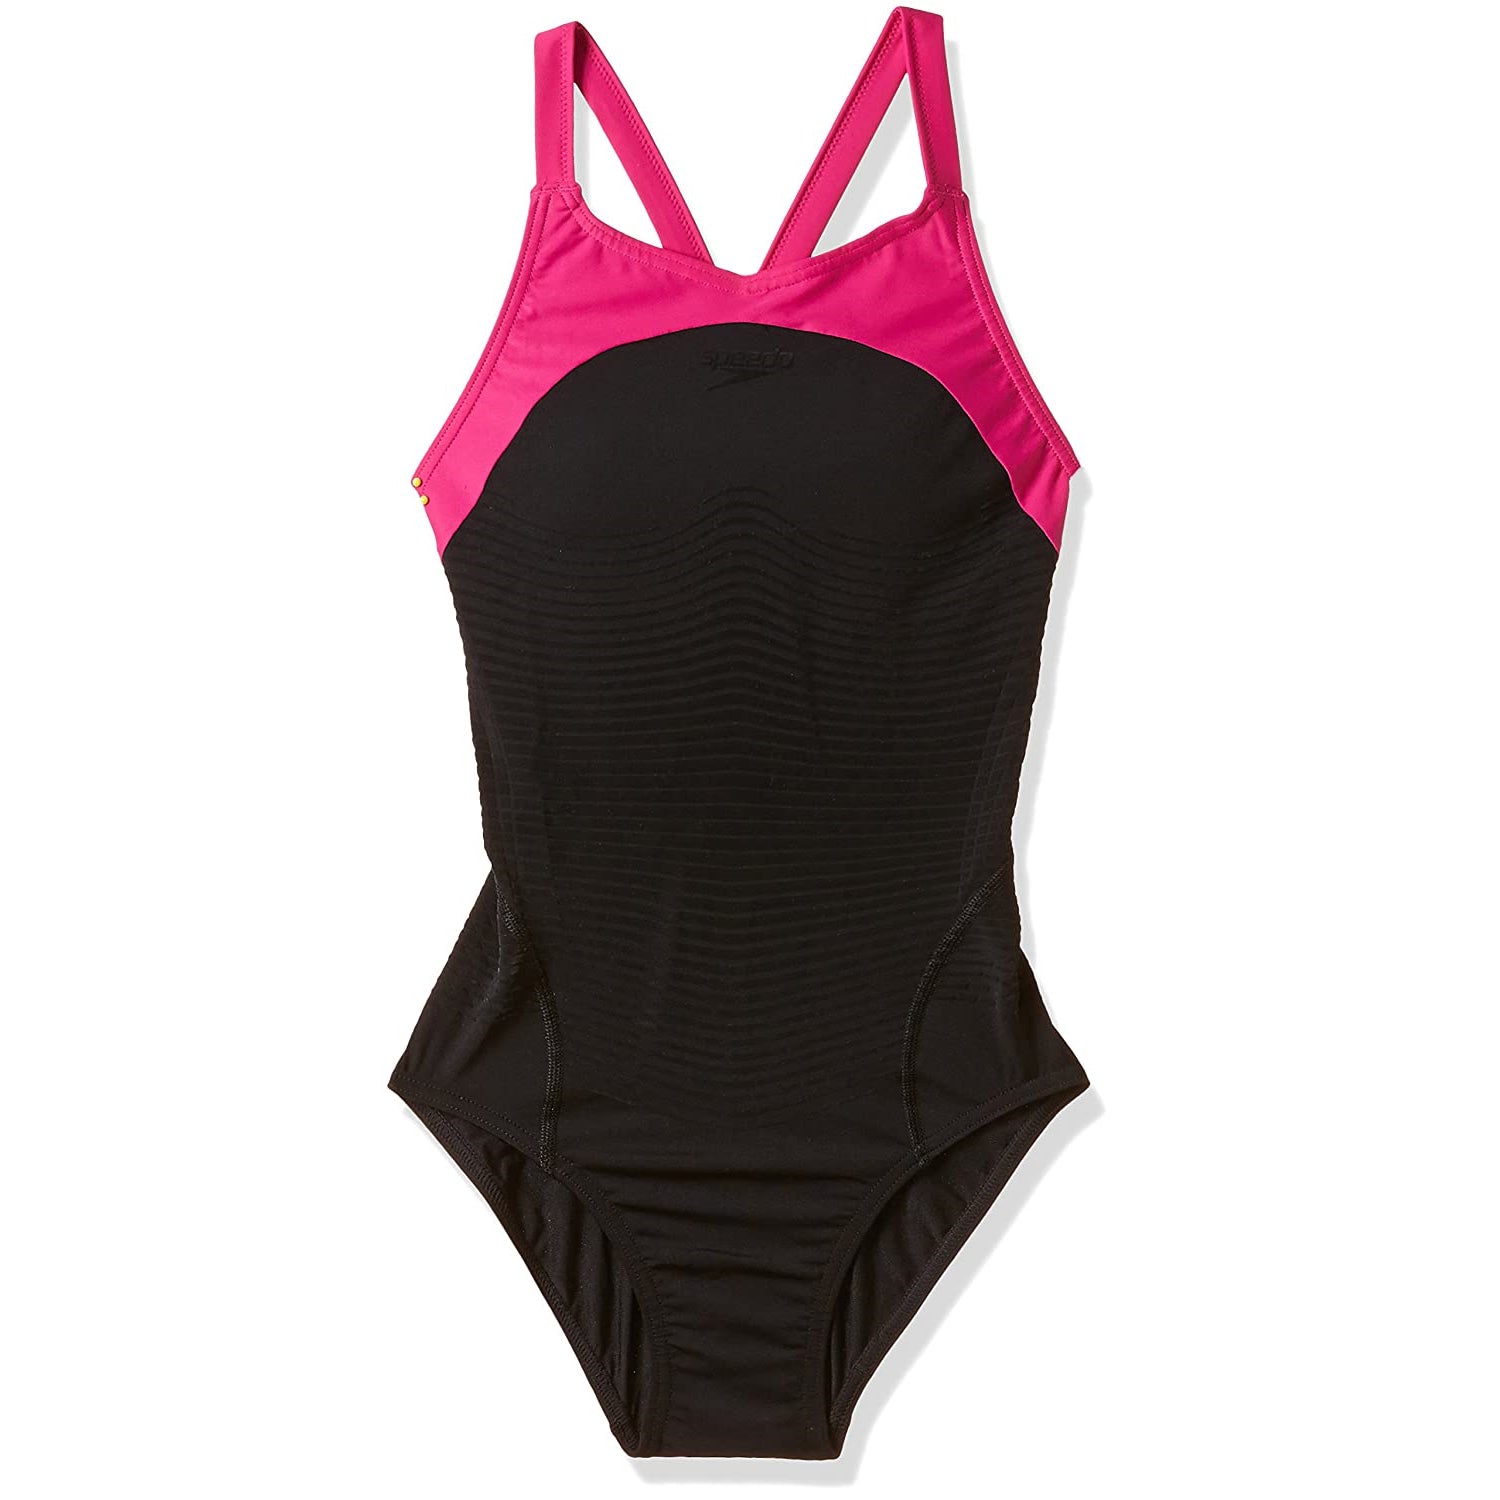 Speedo Female Swimwear Fit Power Form X Back - Best Price online Prokicksports.com